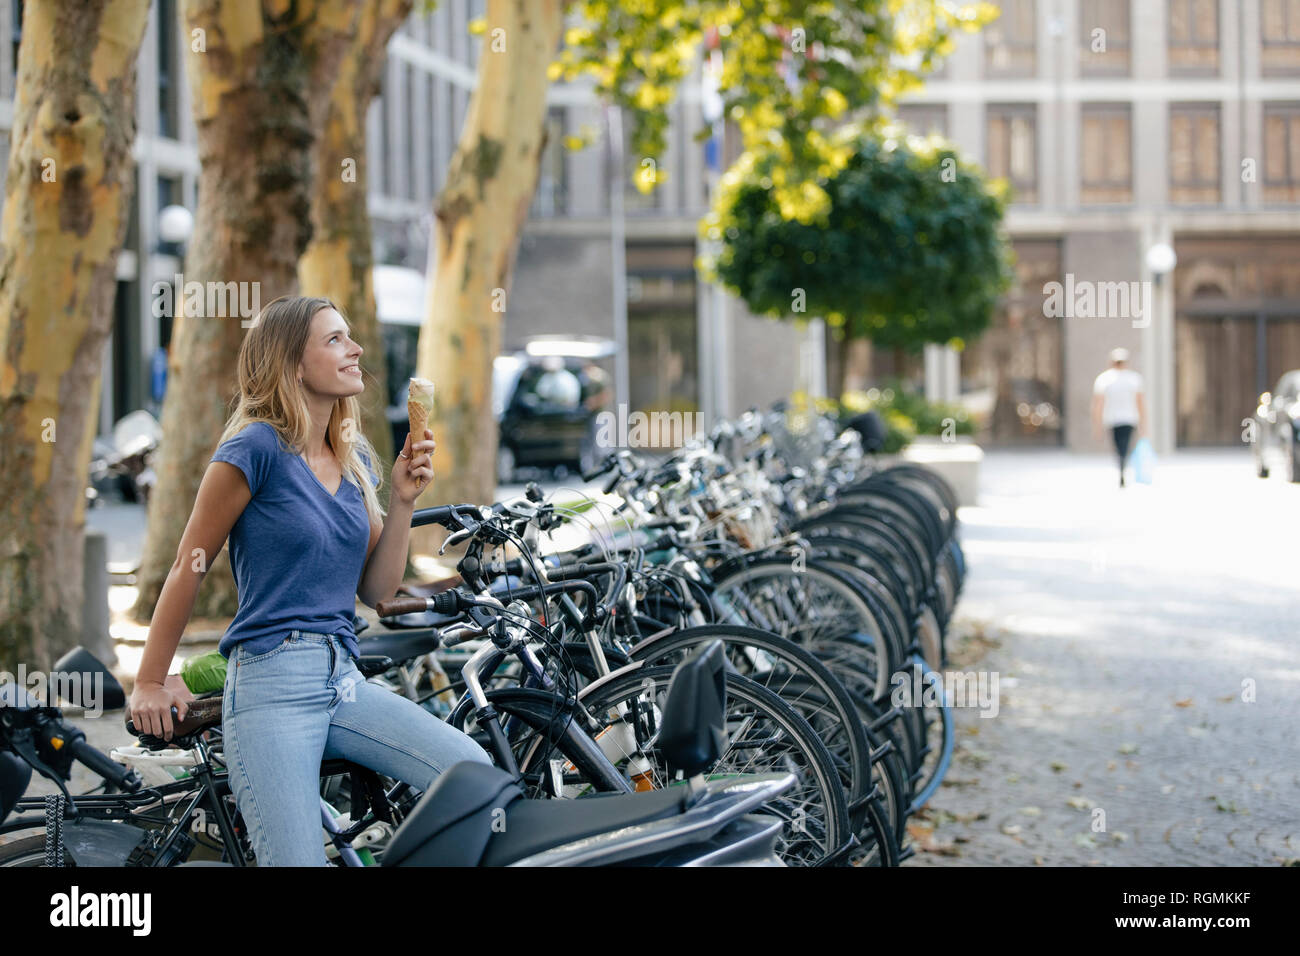 Los Países Bajos, Maastricht, sonriente joven rubia la celebración de cono de helado de la ciudad en el portabicicletas Foto de stock